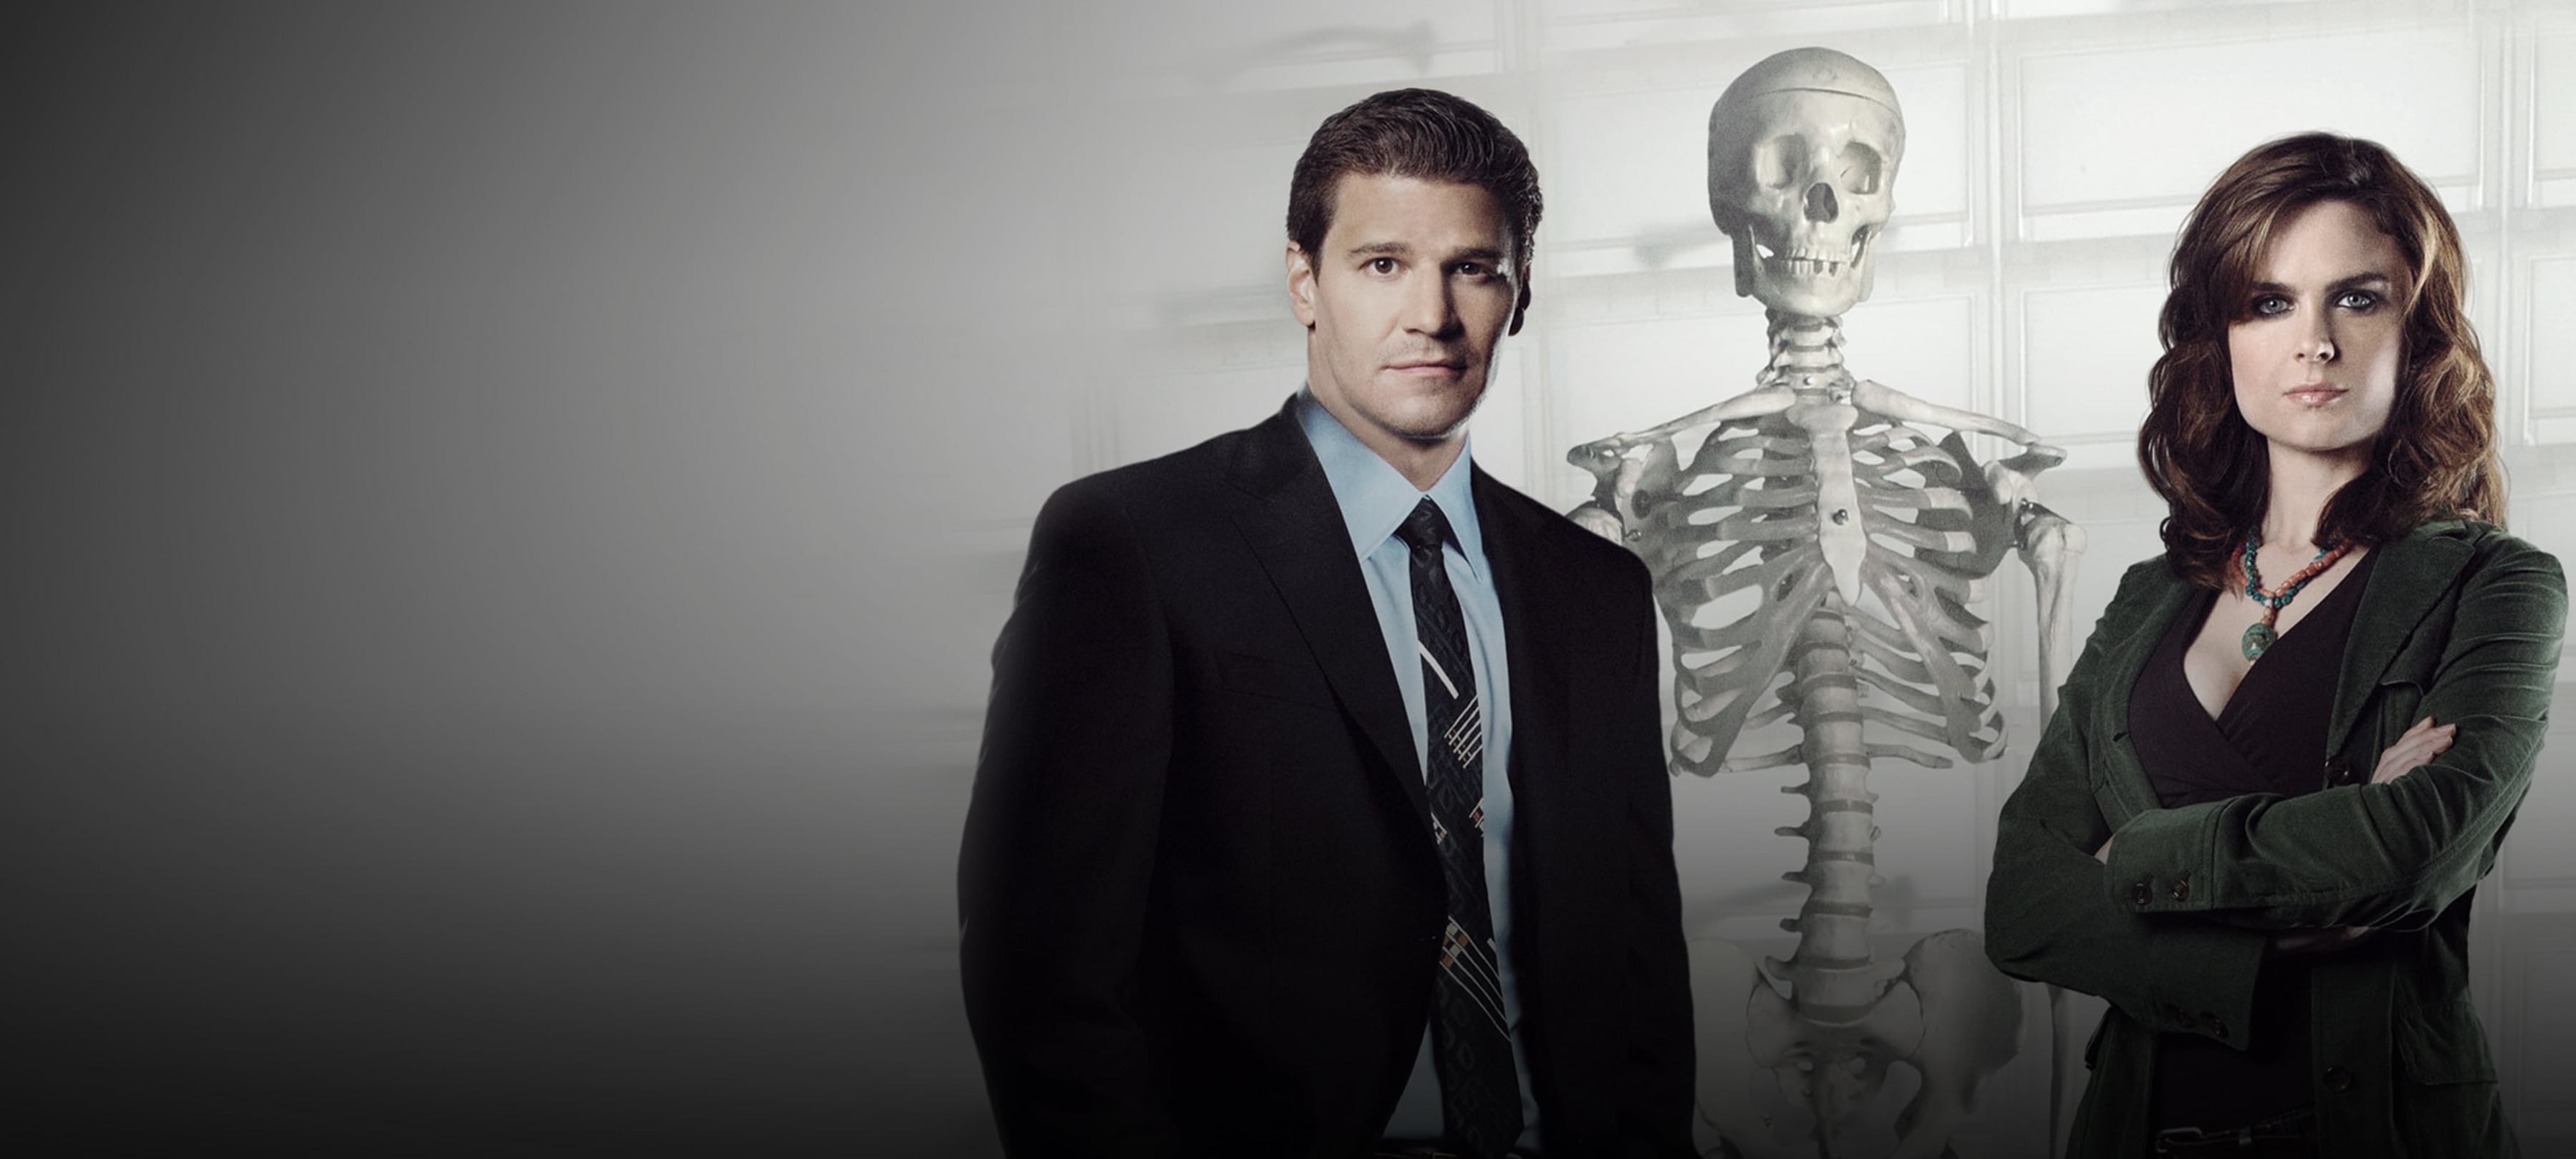 Watch Bones Online | Stream Full Episodes